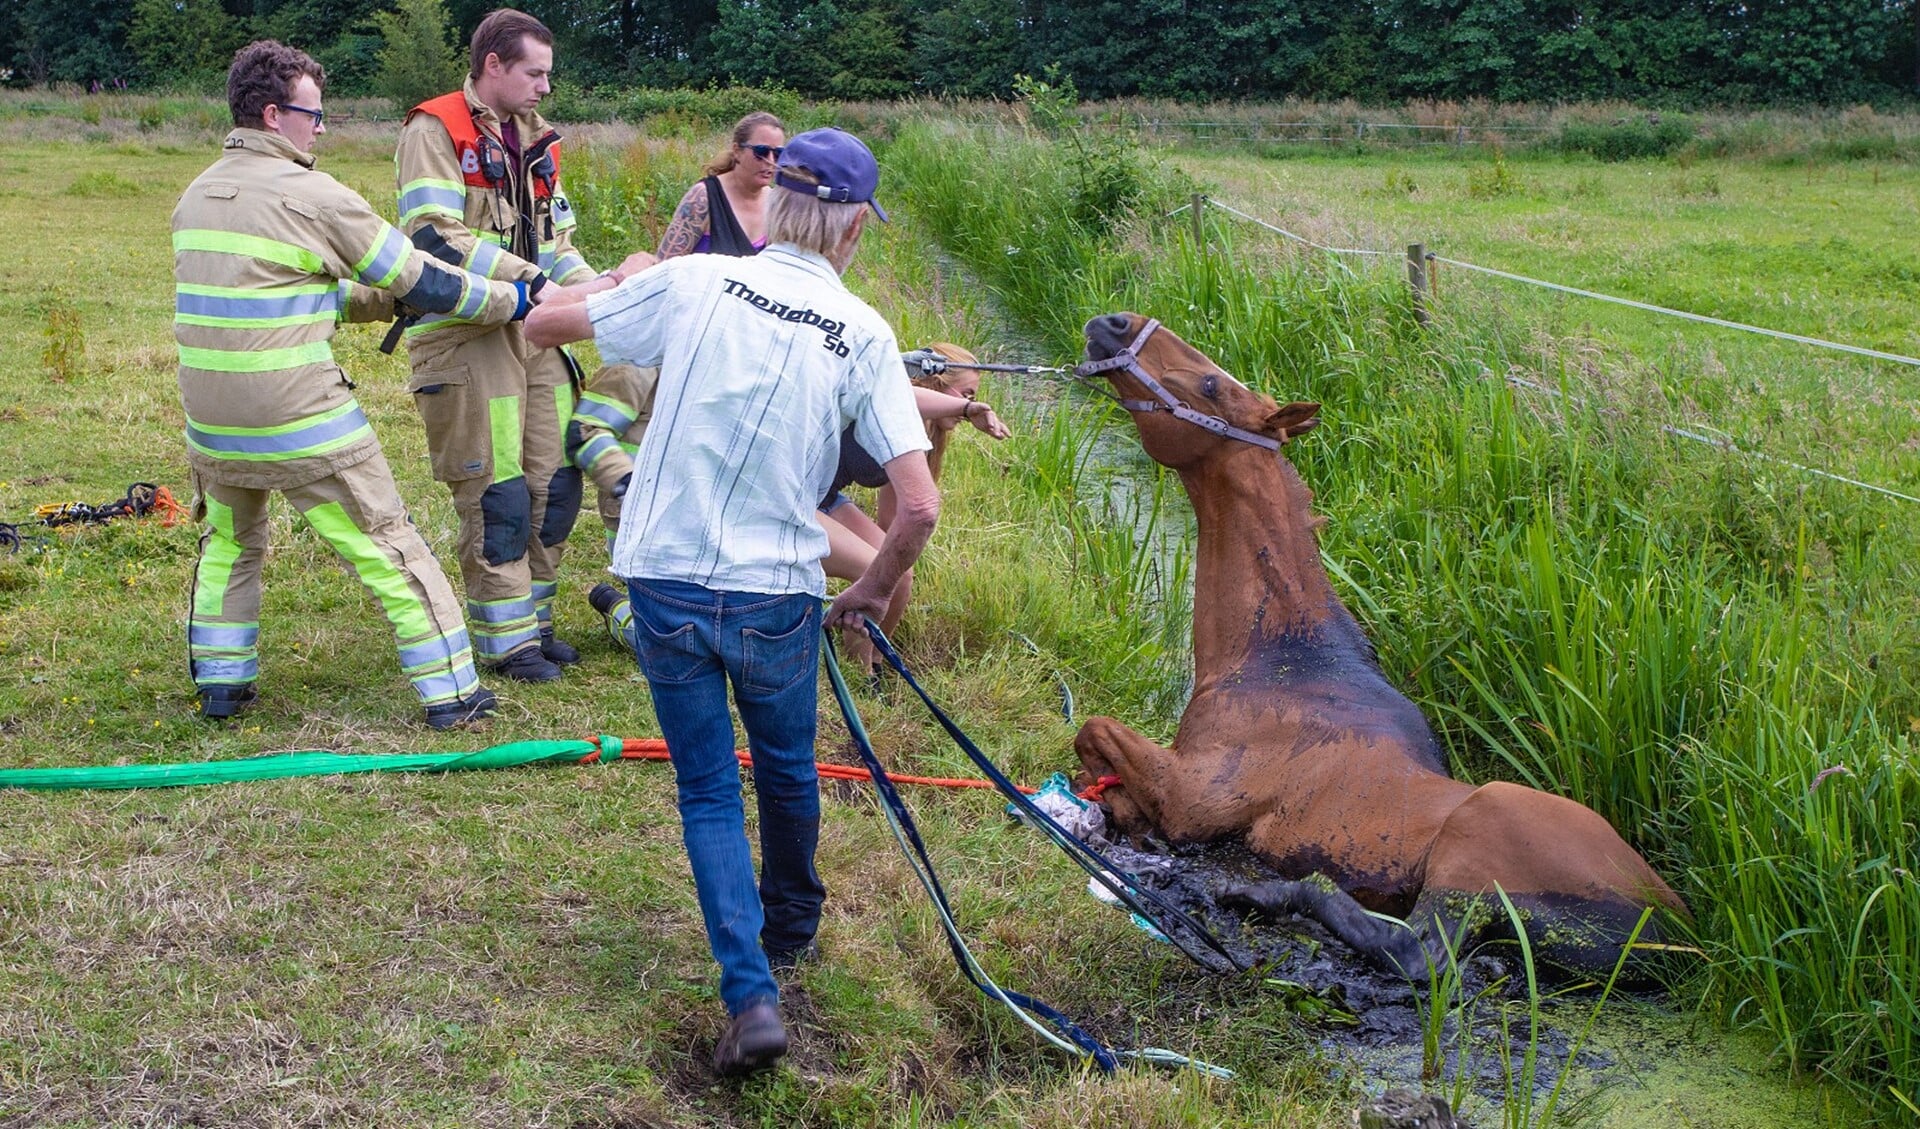 De brandweer helpt het paard uit de sloot te halen.